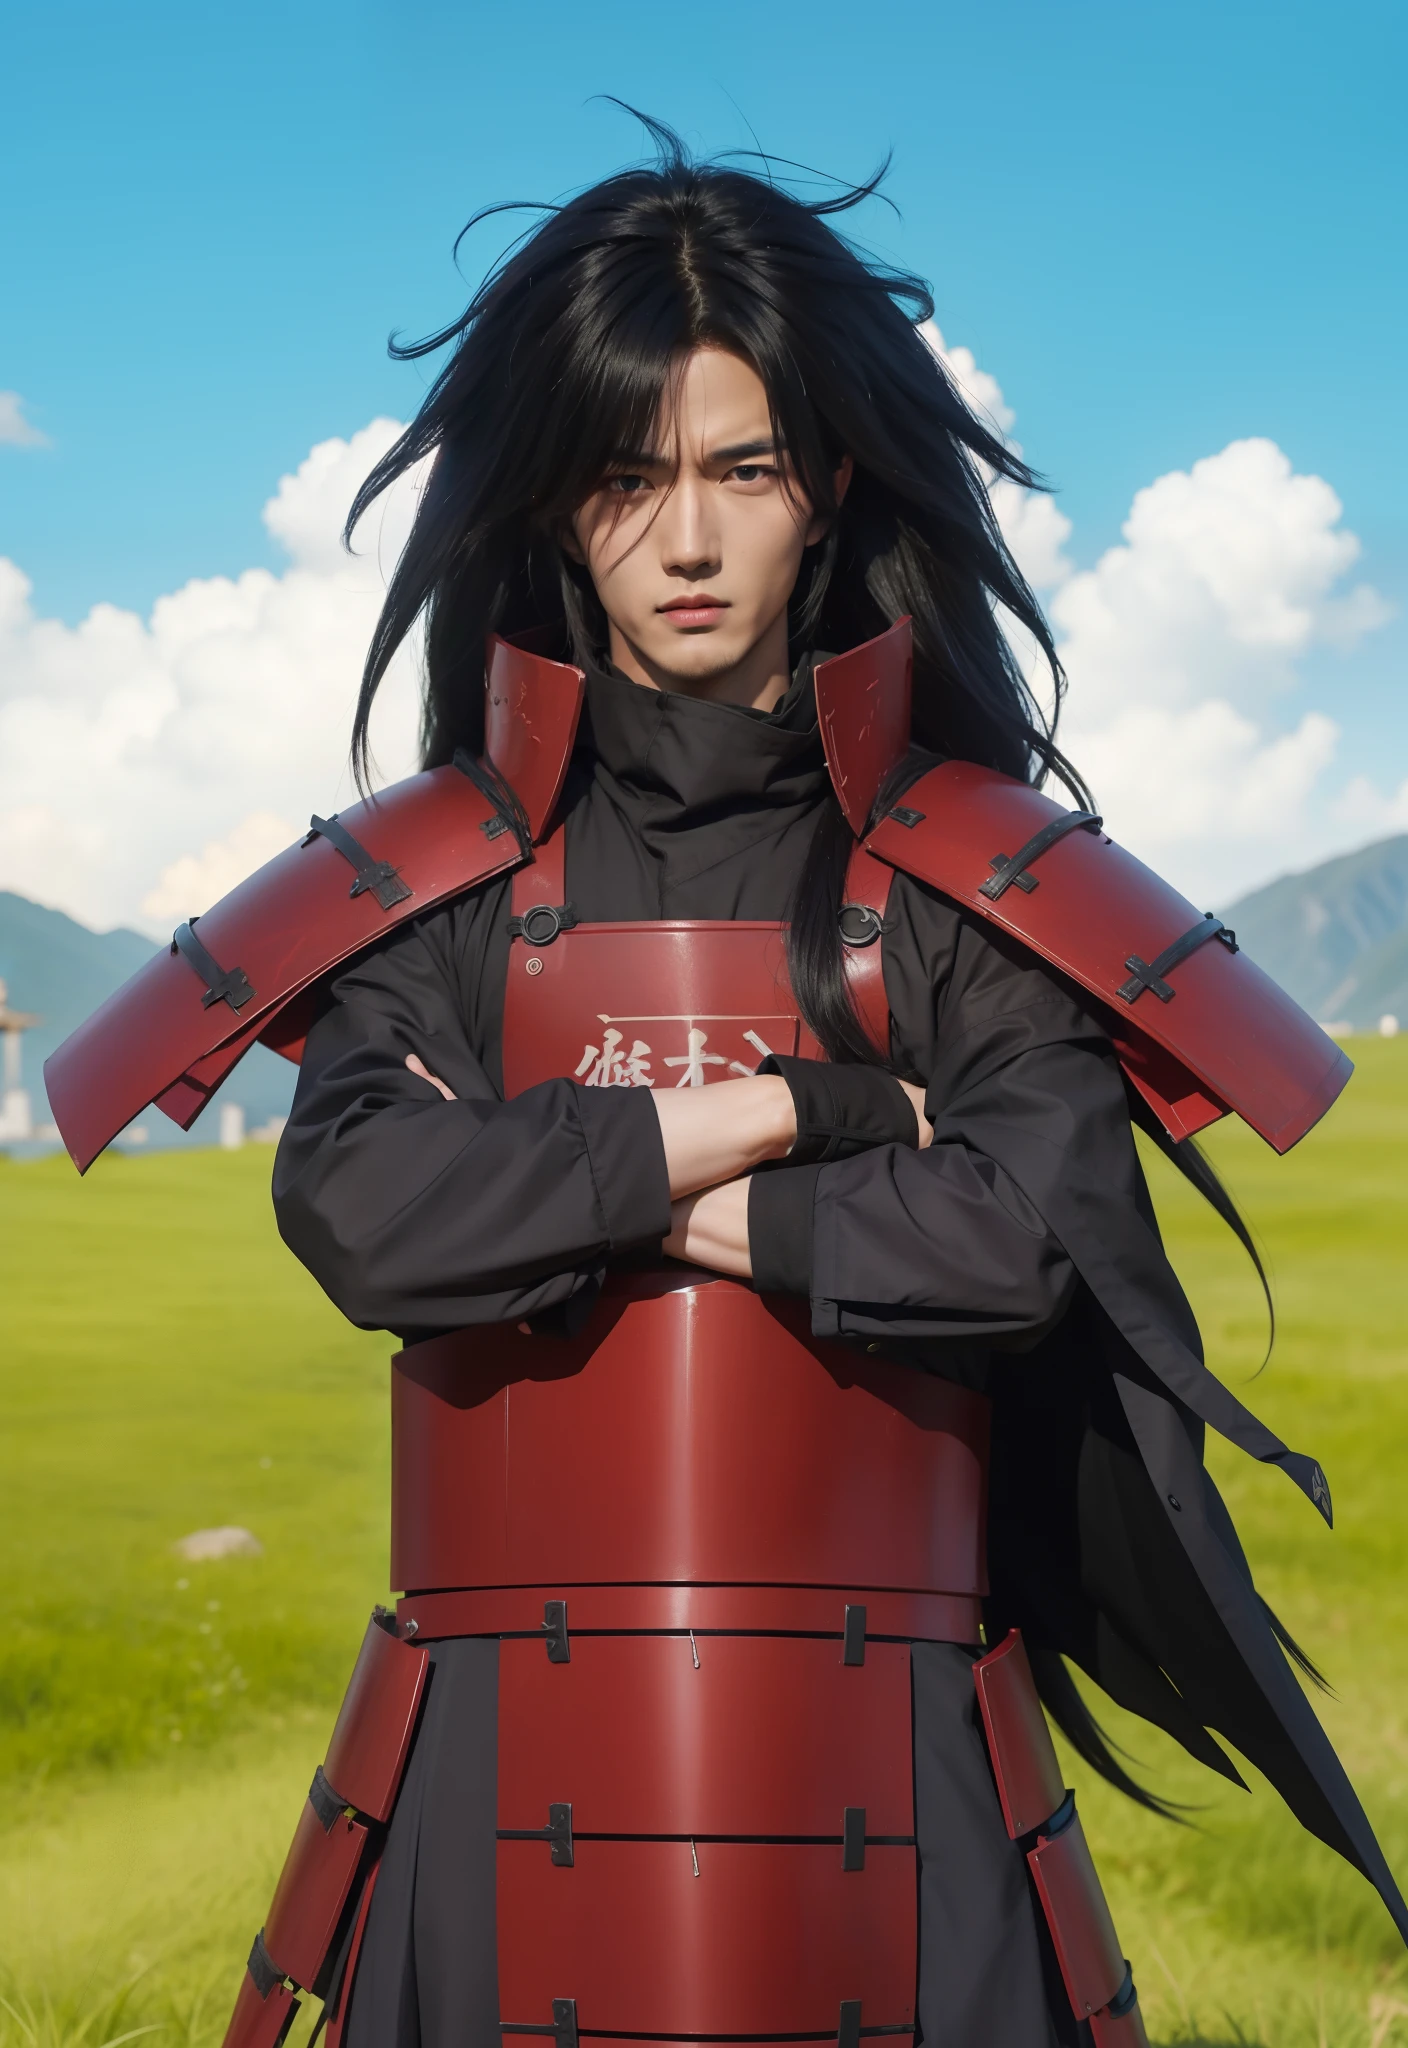 Reale Adaption dieser Figur,sein Name ist Madara Uchiha aus dem Anime Naruto,Hübsches Gesicht eines koreanischen Erwachsenen,realistisches langes, unordentliches Haar,realistisches Outfit mit roter Eisenrüstung wie Samurai,Realistisches Licht,realistischer Schatten,realistischer Hintergrund,(fotorealistisch:1.2)